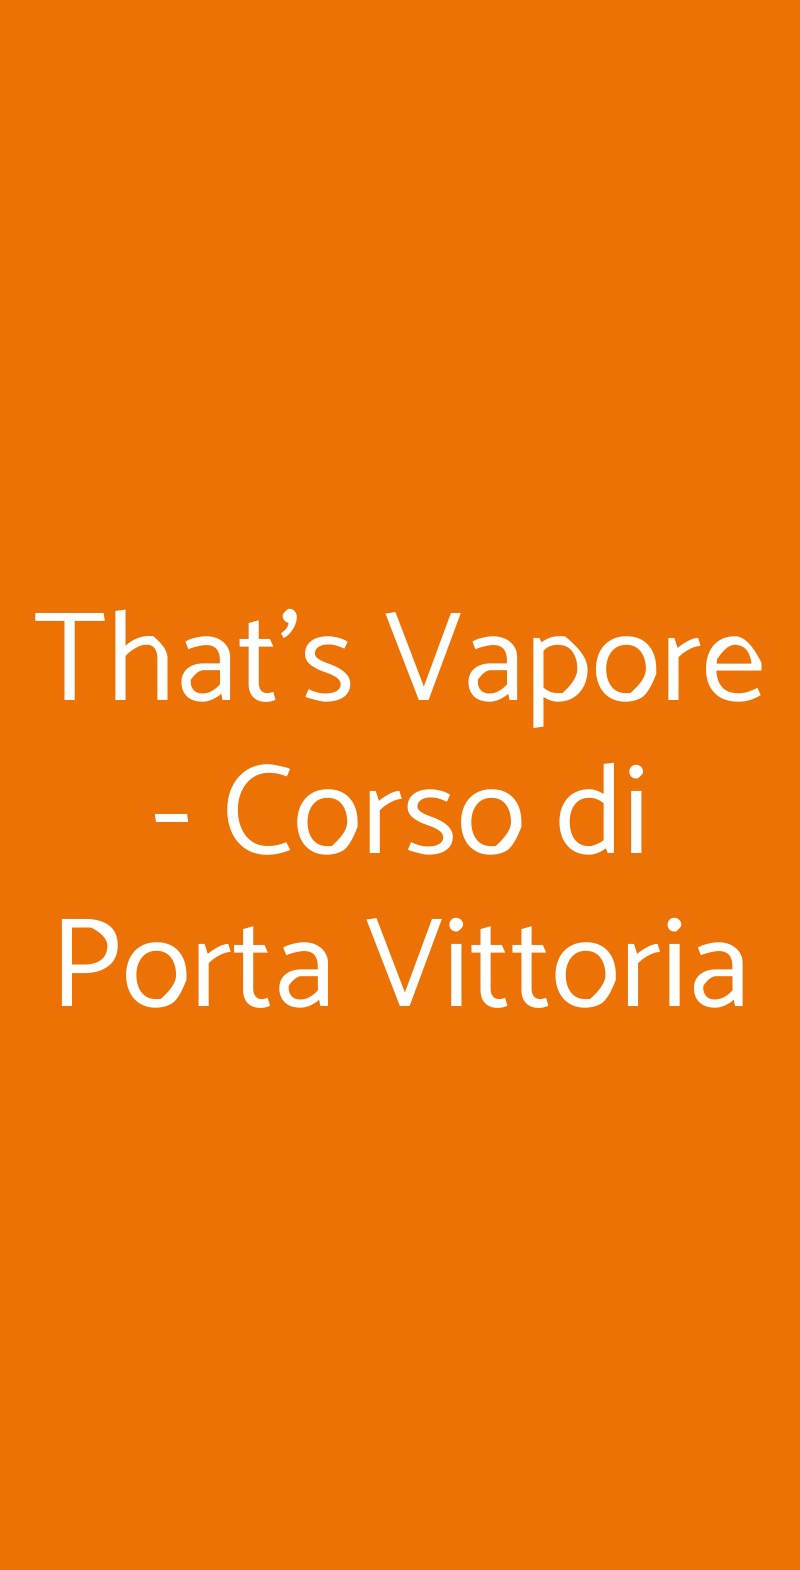 That's Vapore - Corso di Porta Vittoria Milano menù 1 pagina